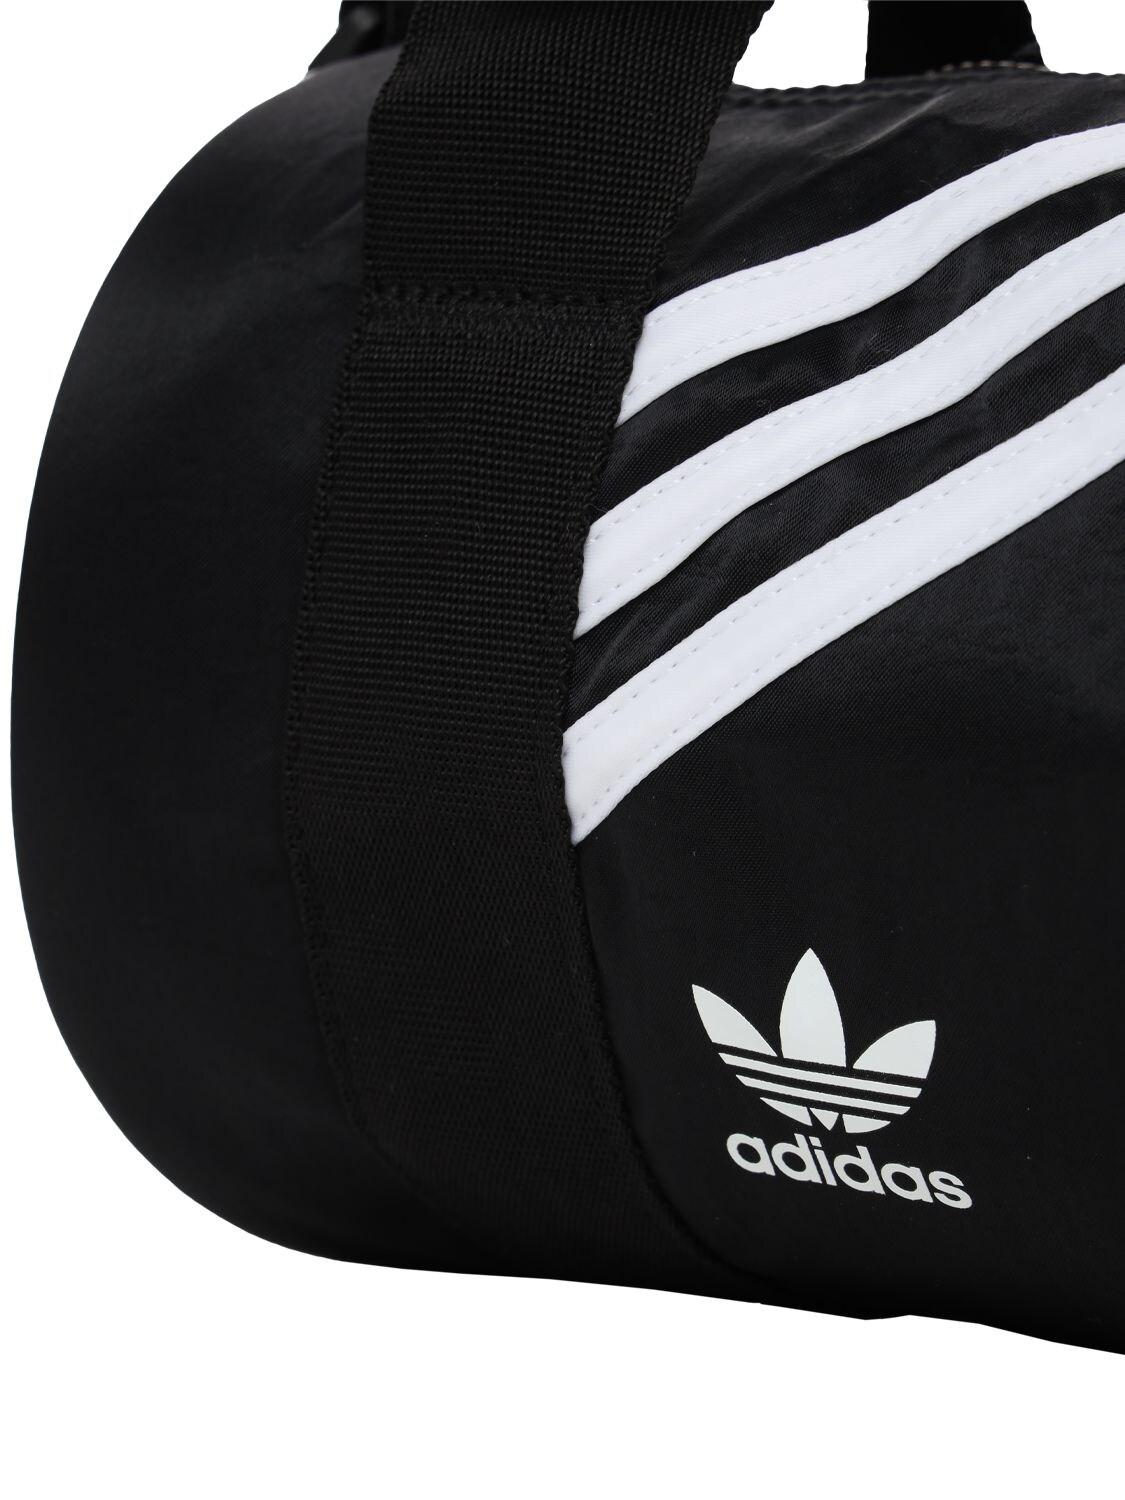 adidas Originals Mini Duffle Bag in Black | Lyst